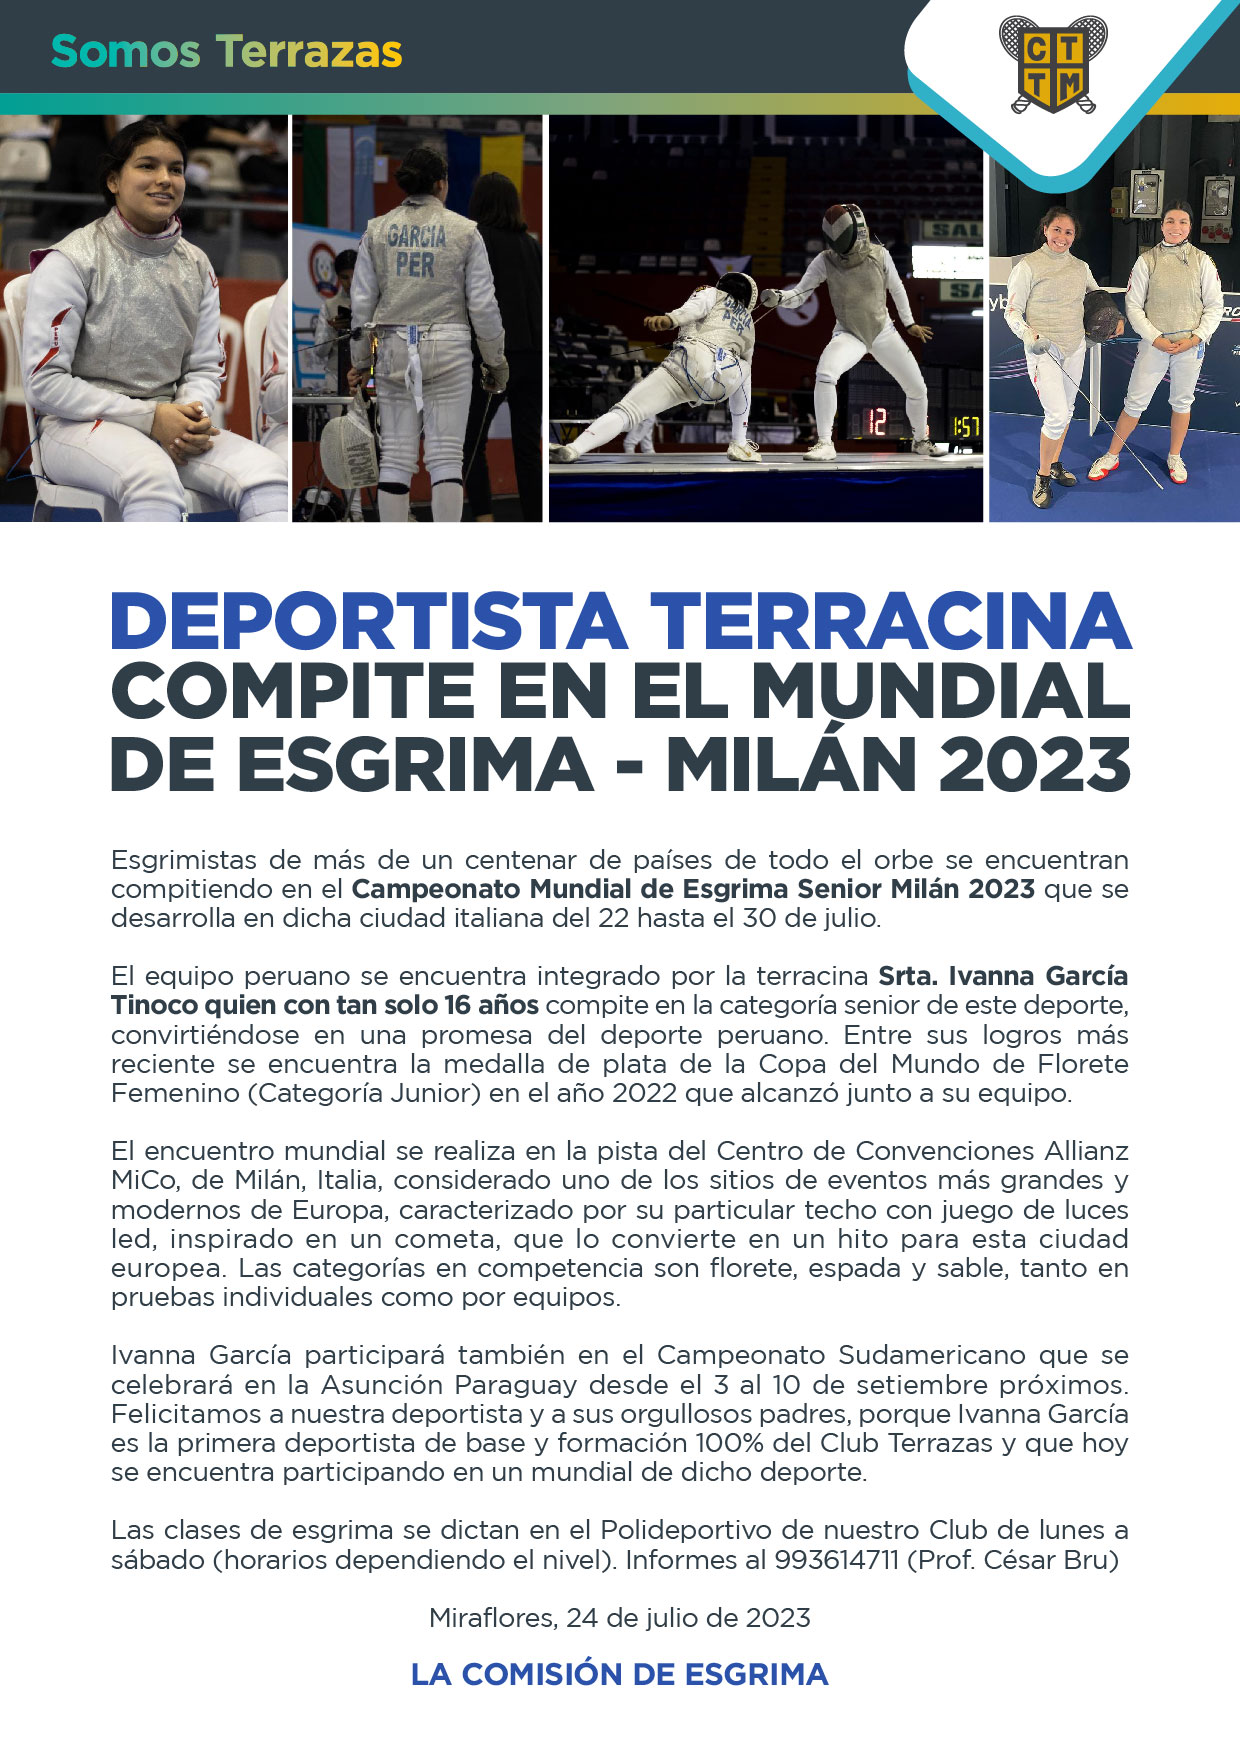 DEPORTISTA TERRACINA COMPITE EN EL MUNDIAL DE ESGRIMA - MILÁN 2023